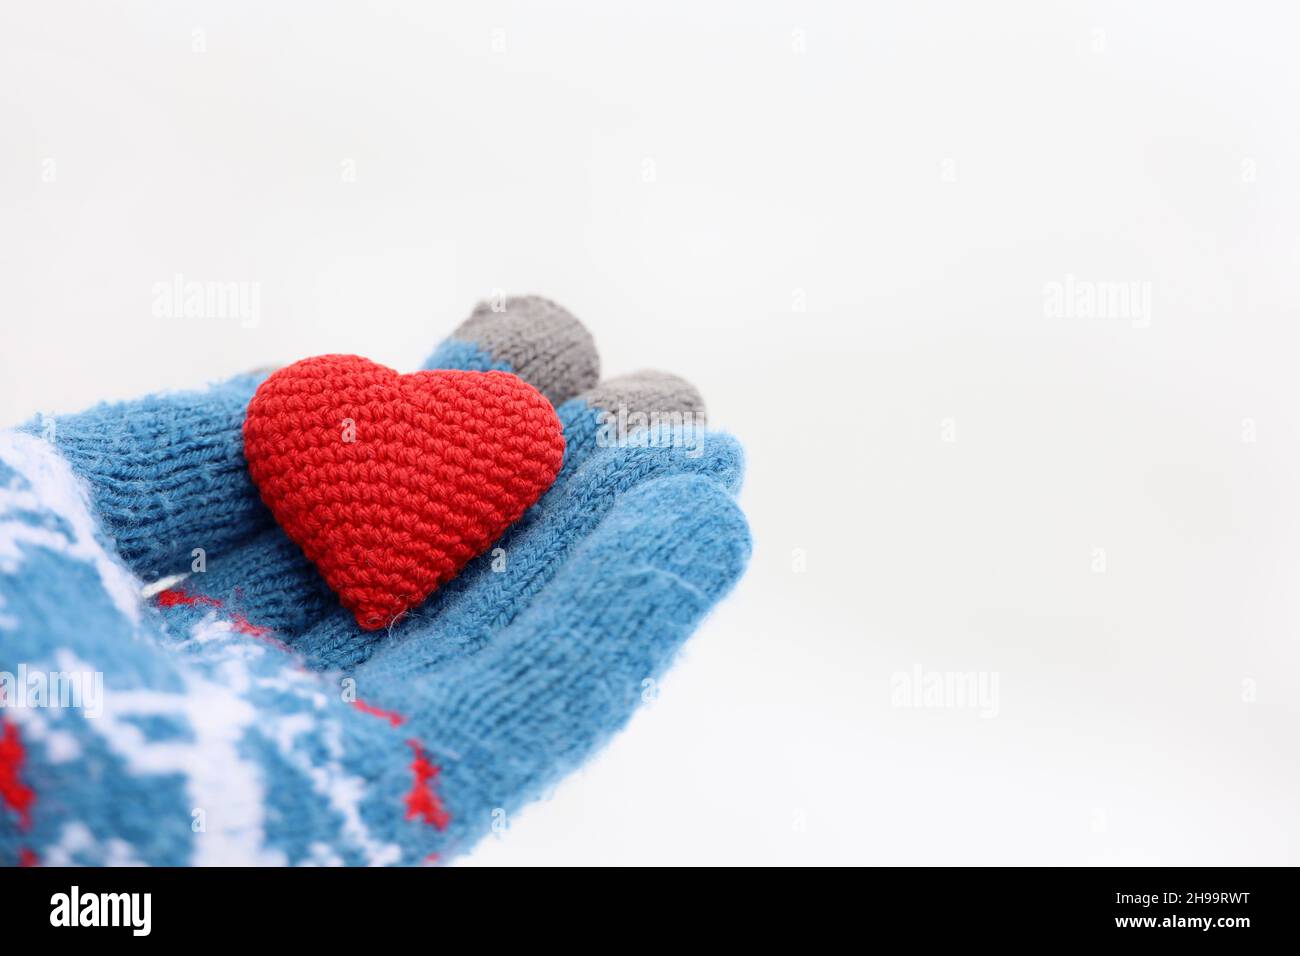 Rotes Herz auf Handfläche in warmem Strickhandschuh gegen den weißen Schnee. Konzept einer romantischen Liebe, Valentinstag oder Nächstenliebe Stockfoto